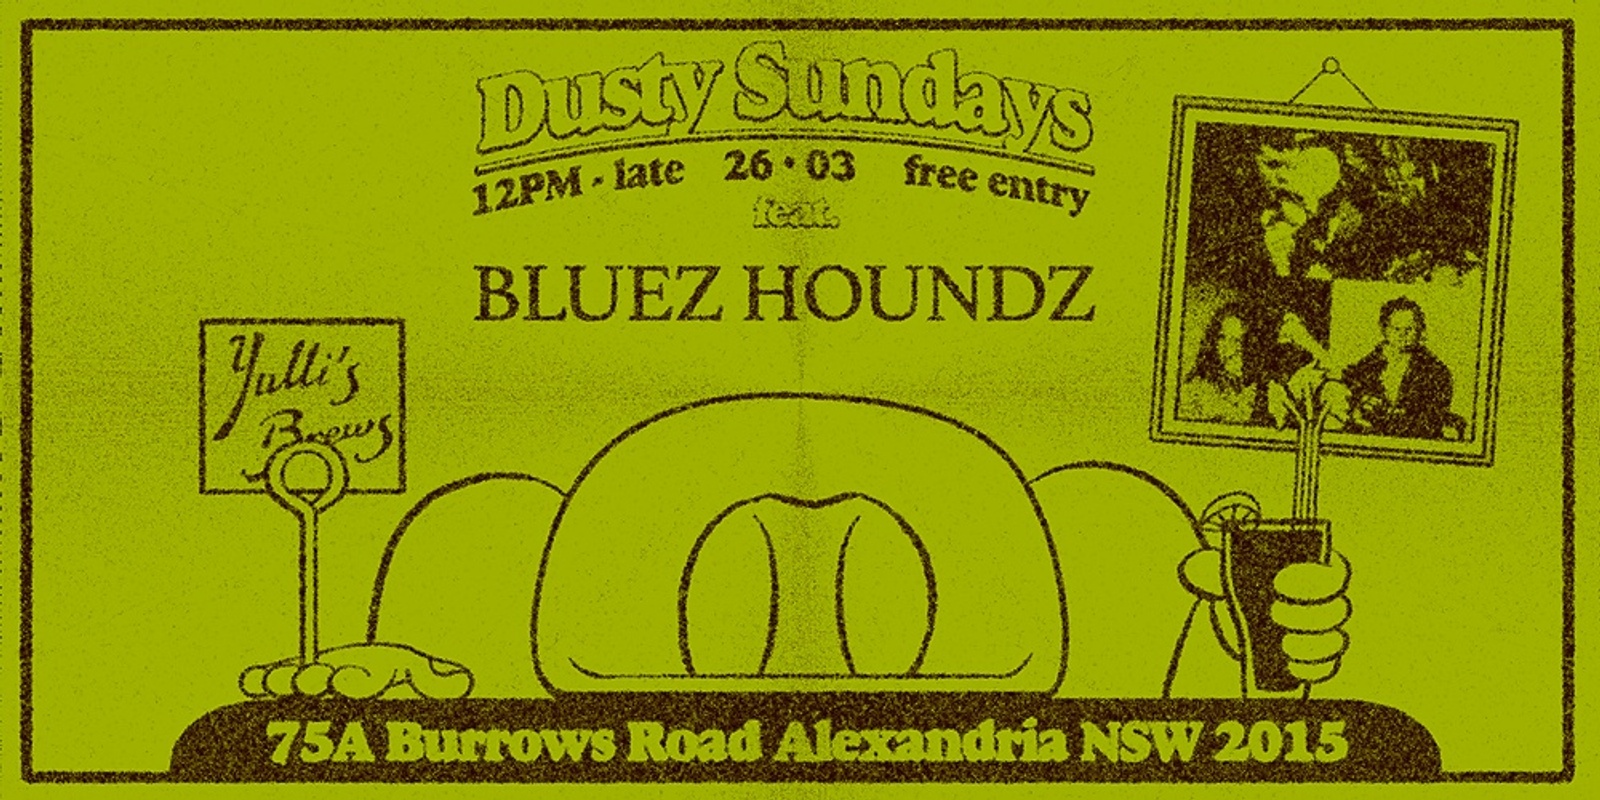 DUSTY SUNDAYS - Bluez Houndz